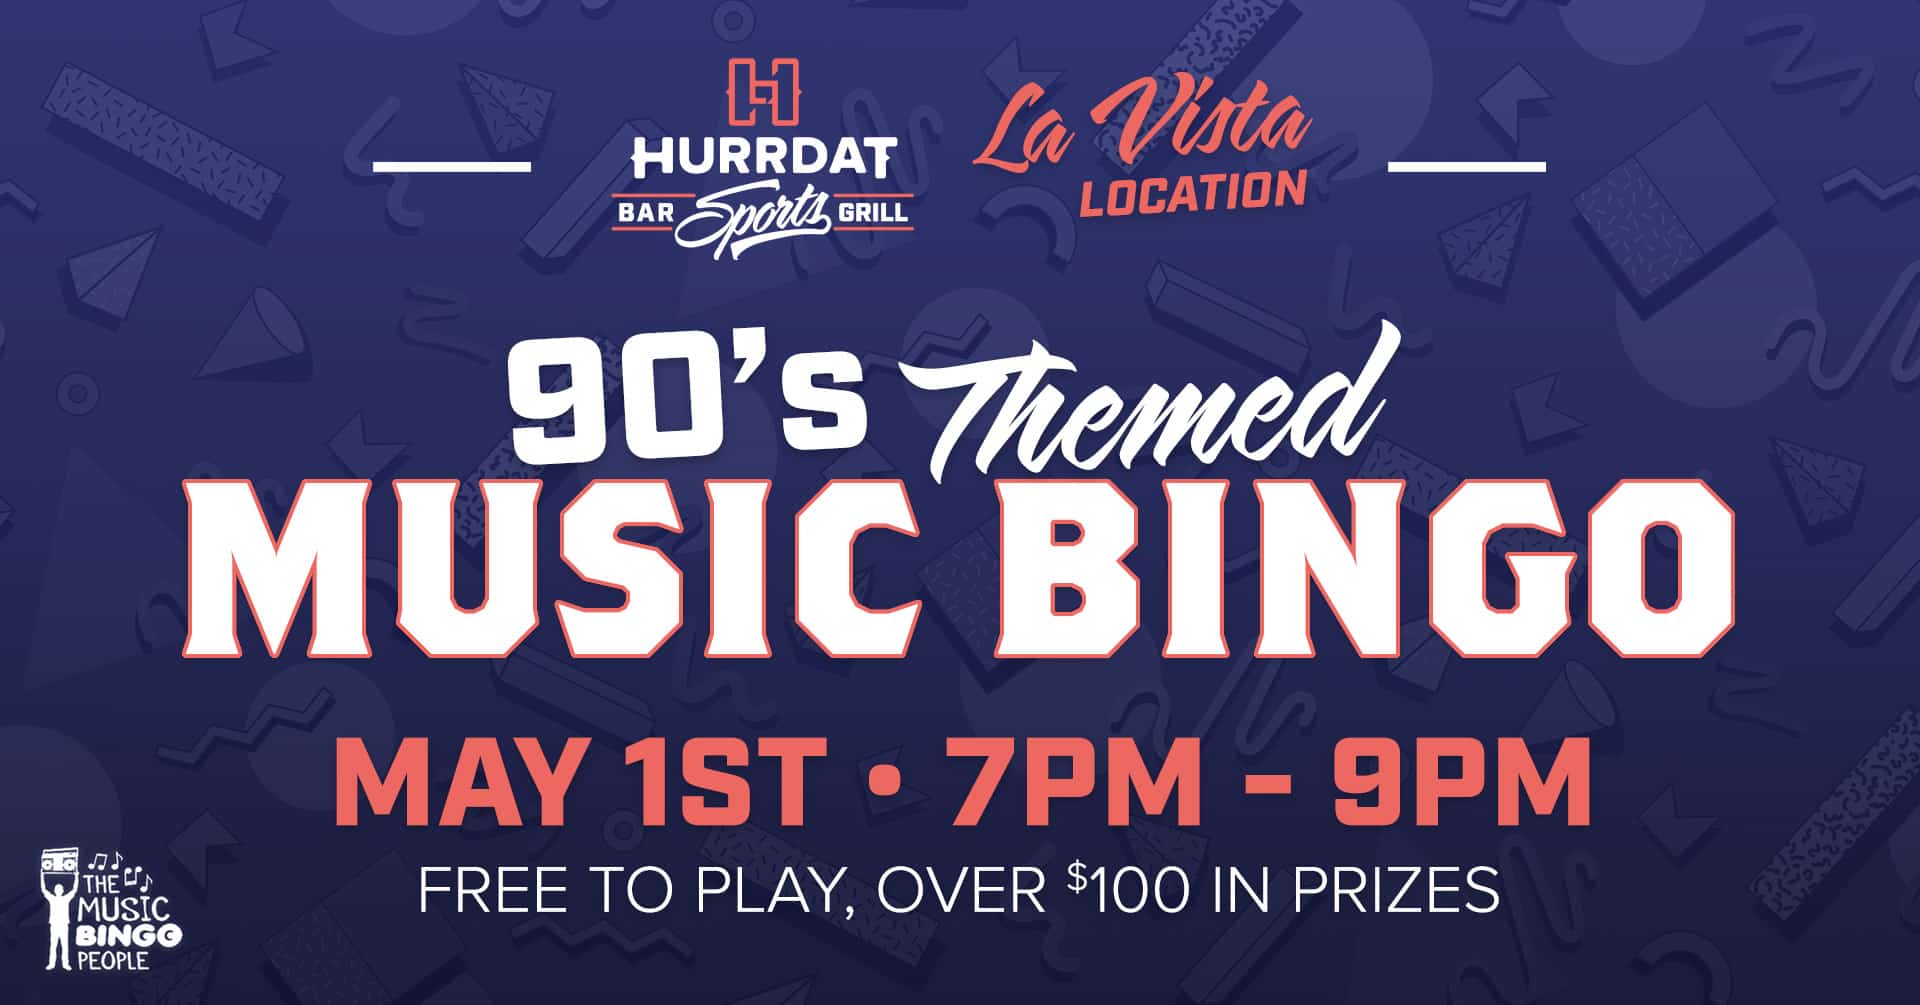 90s Themed Music Bingo in La Vista